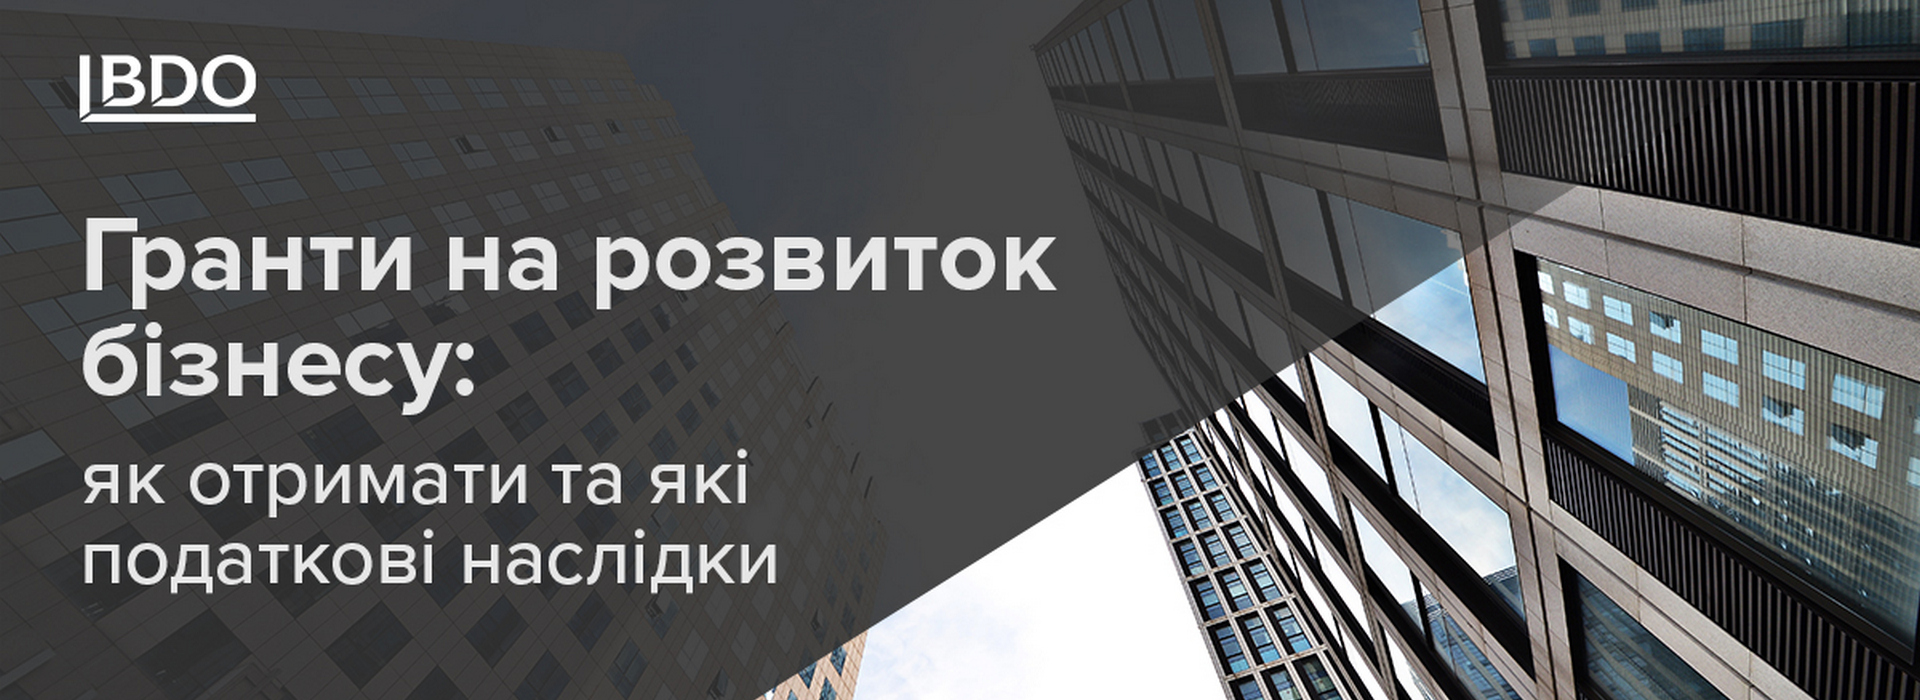 БДО в Україні: ваш партнер у вивченні грантової підтримки та податкових наслідків для розвитку бізнесу